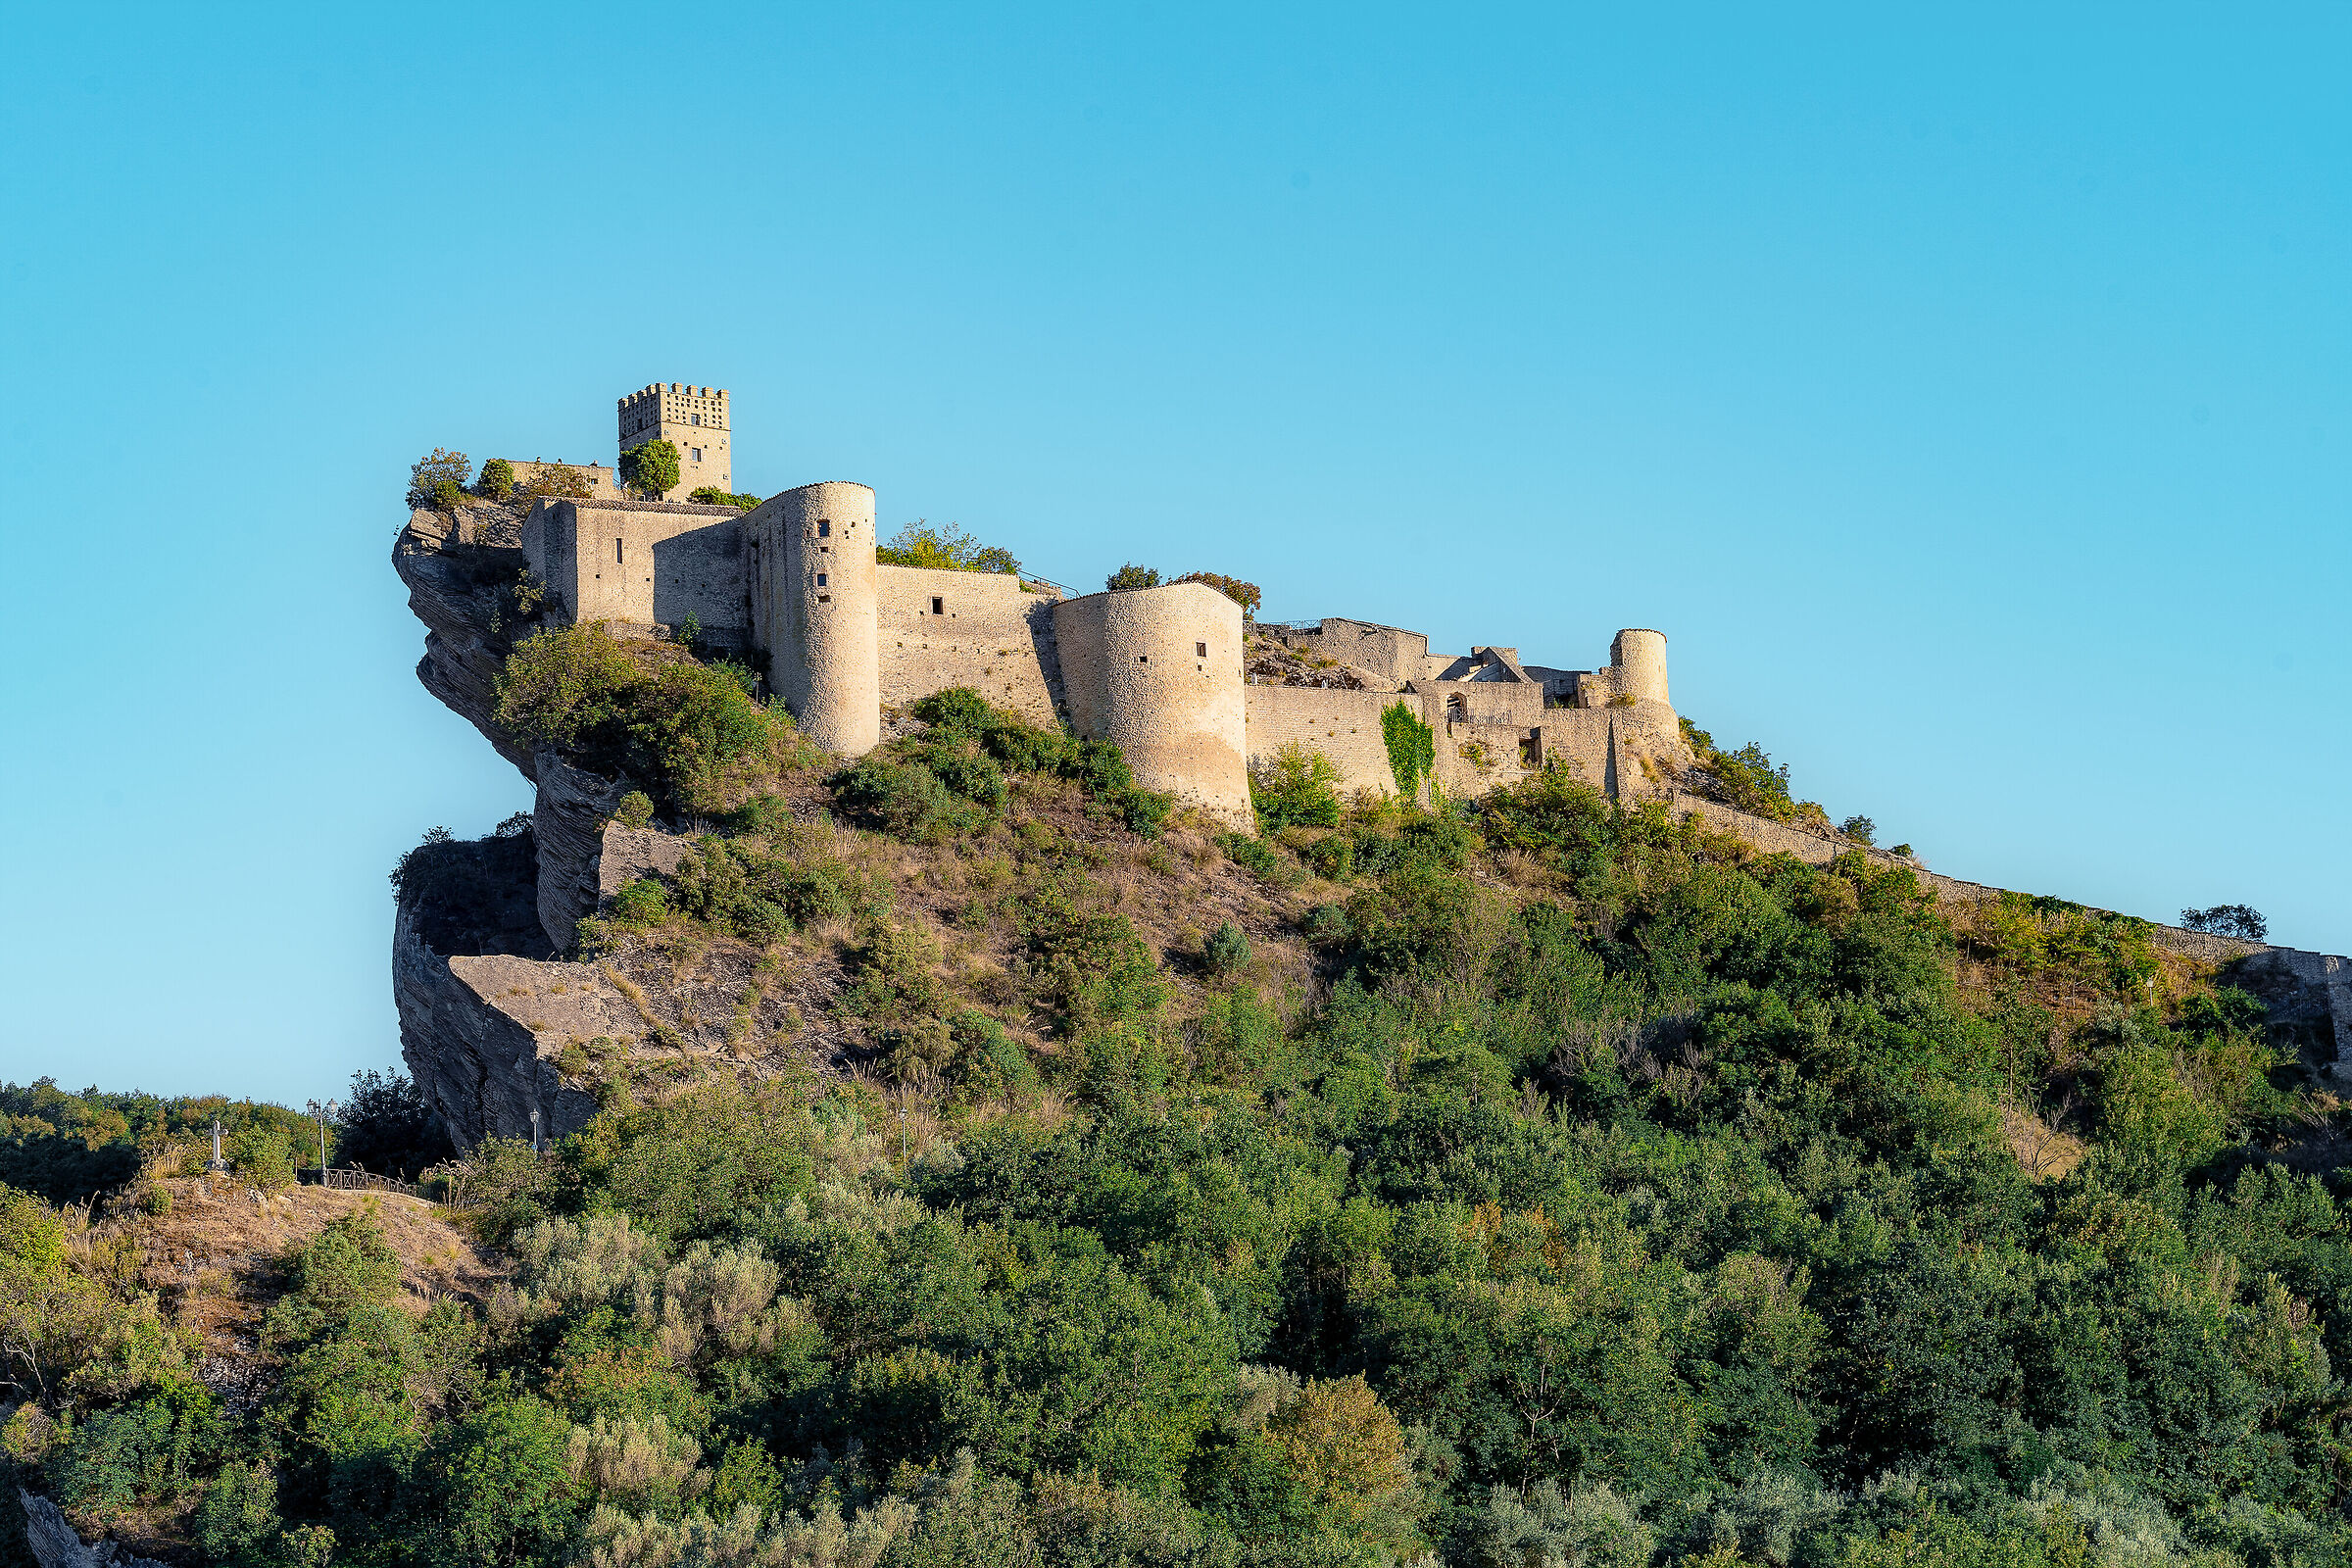 The castle of Roccascalegna...